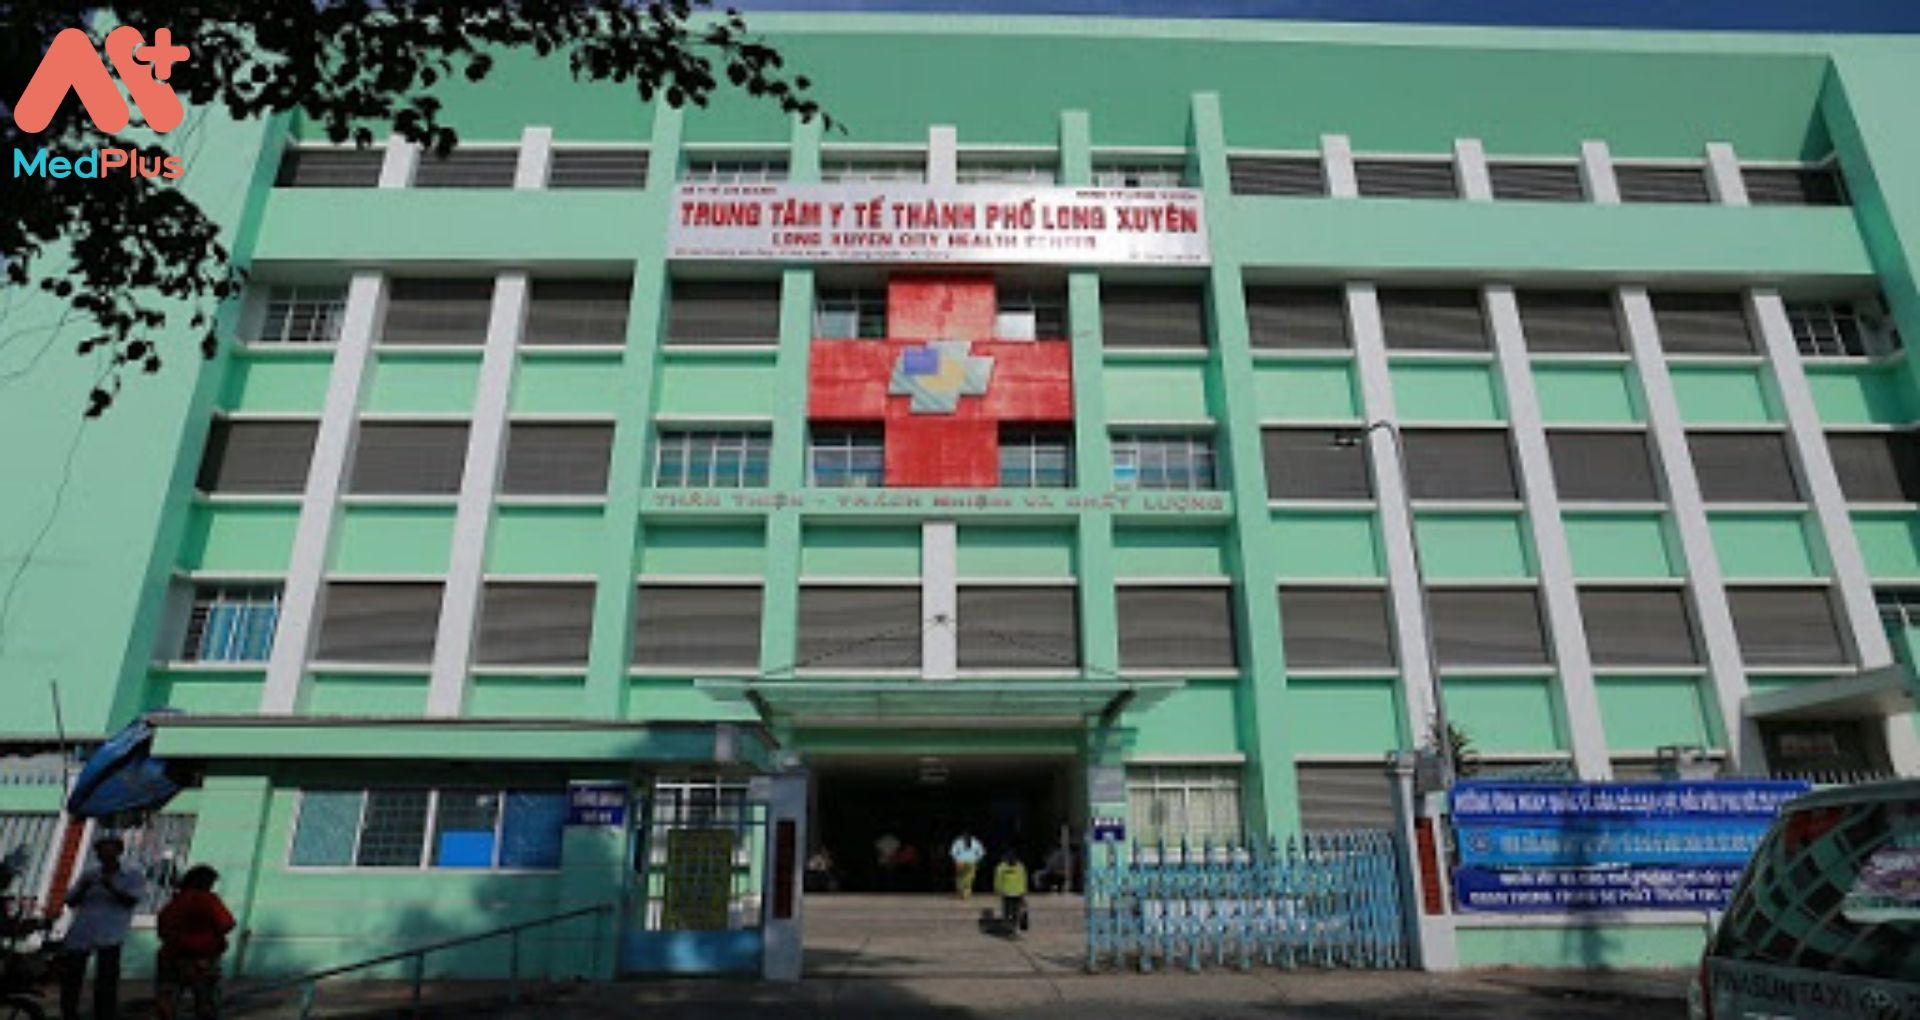 Trung tâm y tế thành phố Long Xuyên